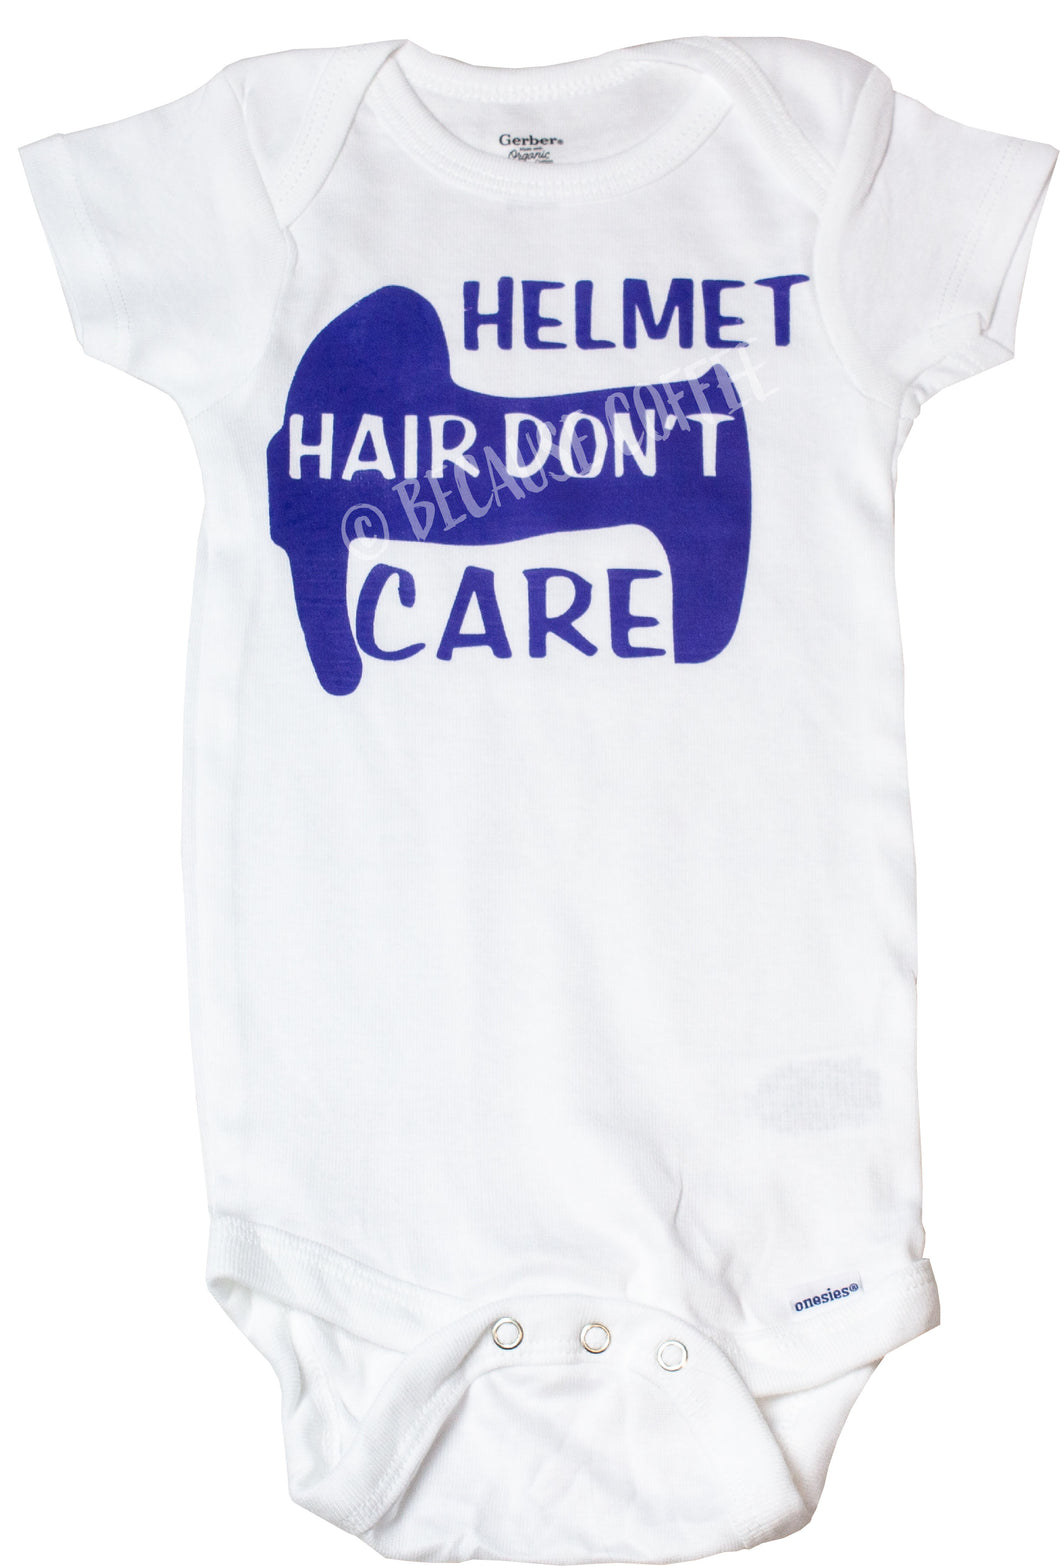 Helmet Hair Don't Care